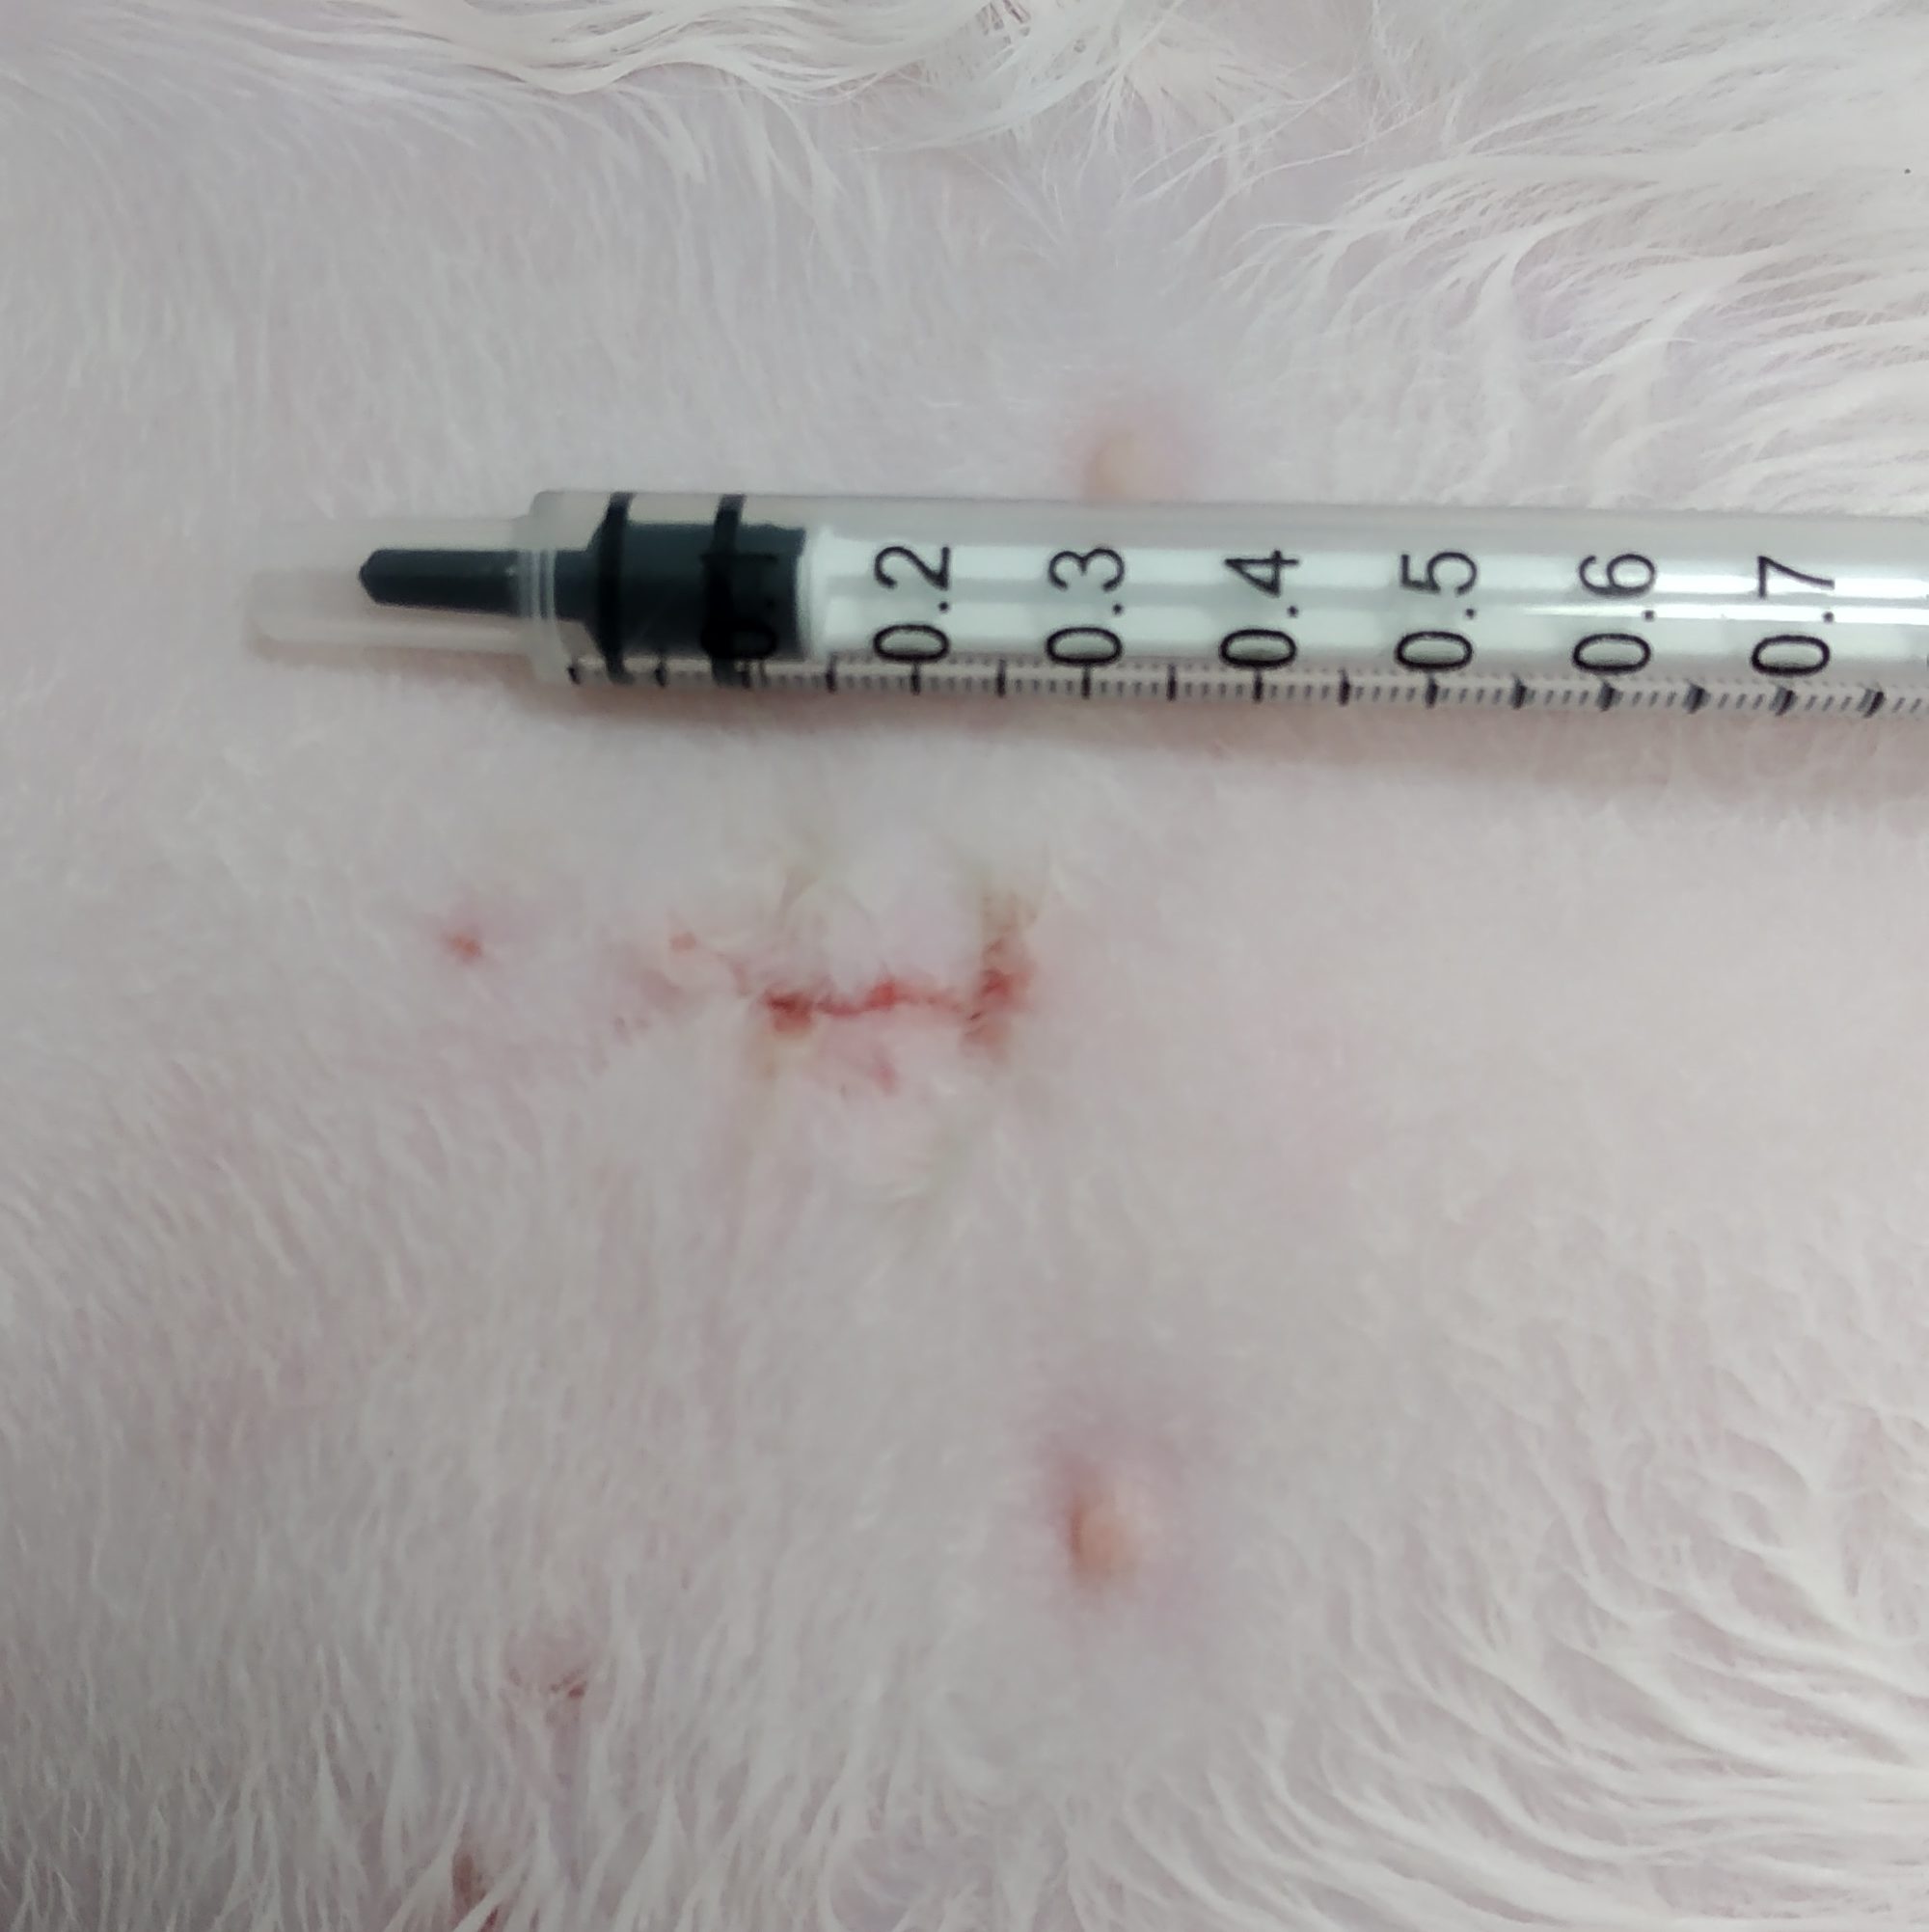 Cicatriz de una gata tras castración por laparotomía realizada en nuestro quirófano por nuestra veterinaria experta en cirugía.